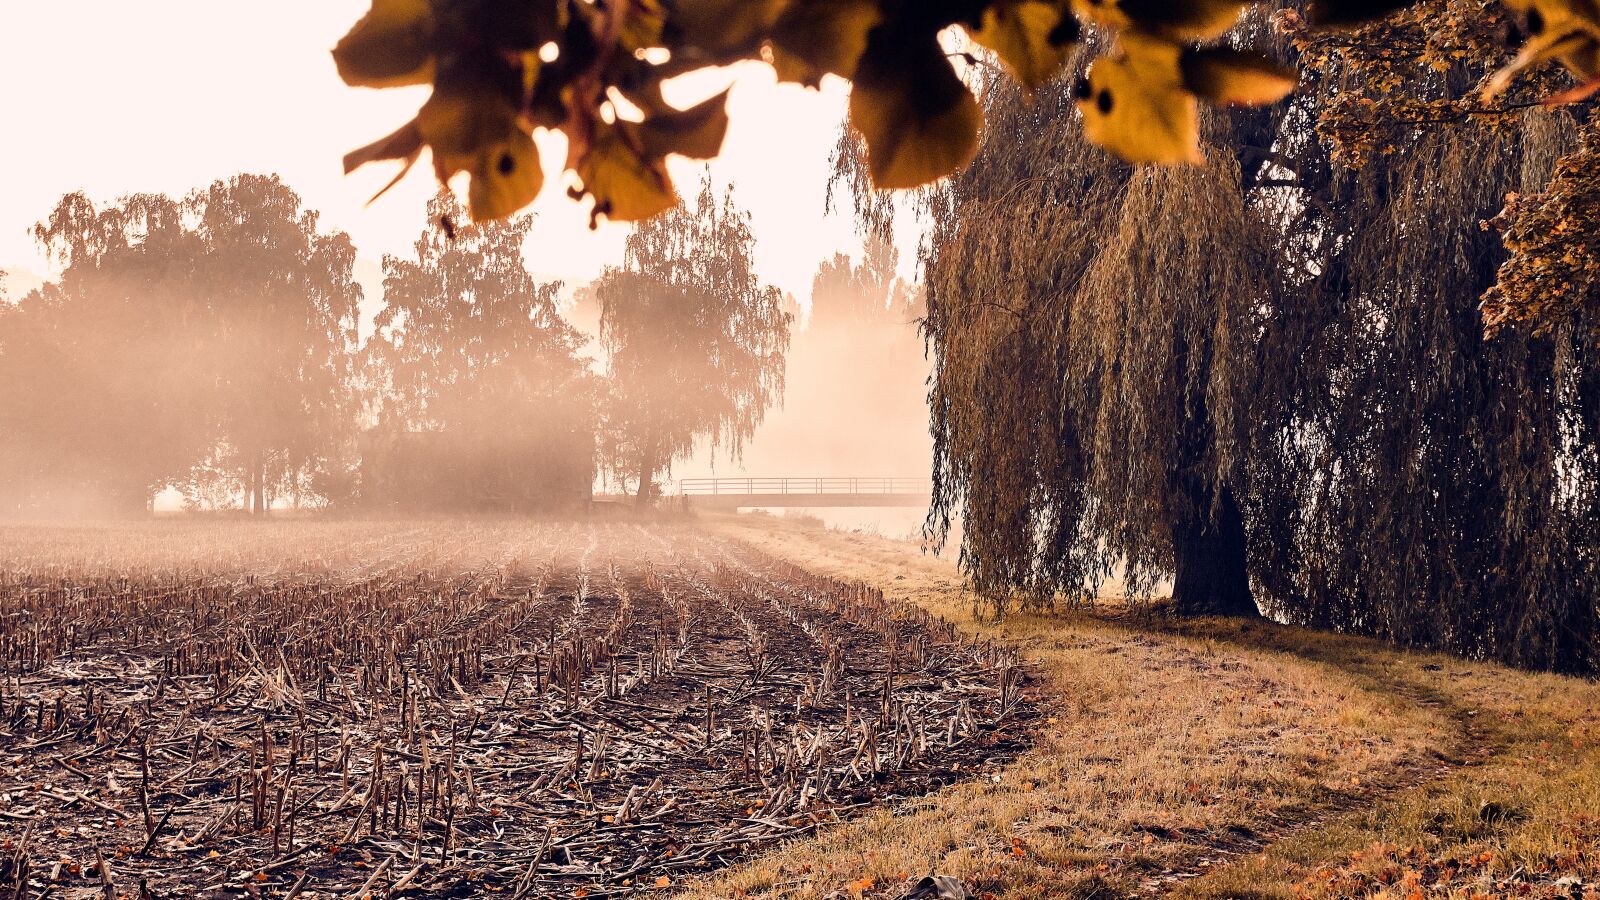 Sony a6300 sample photo. Autumn, fog, arable photography